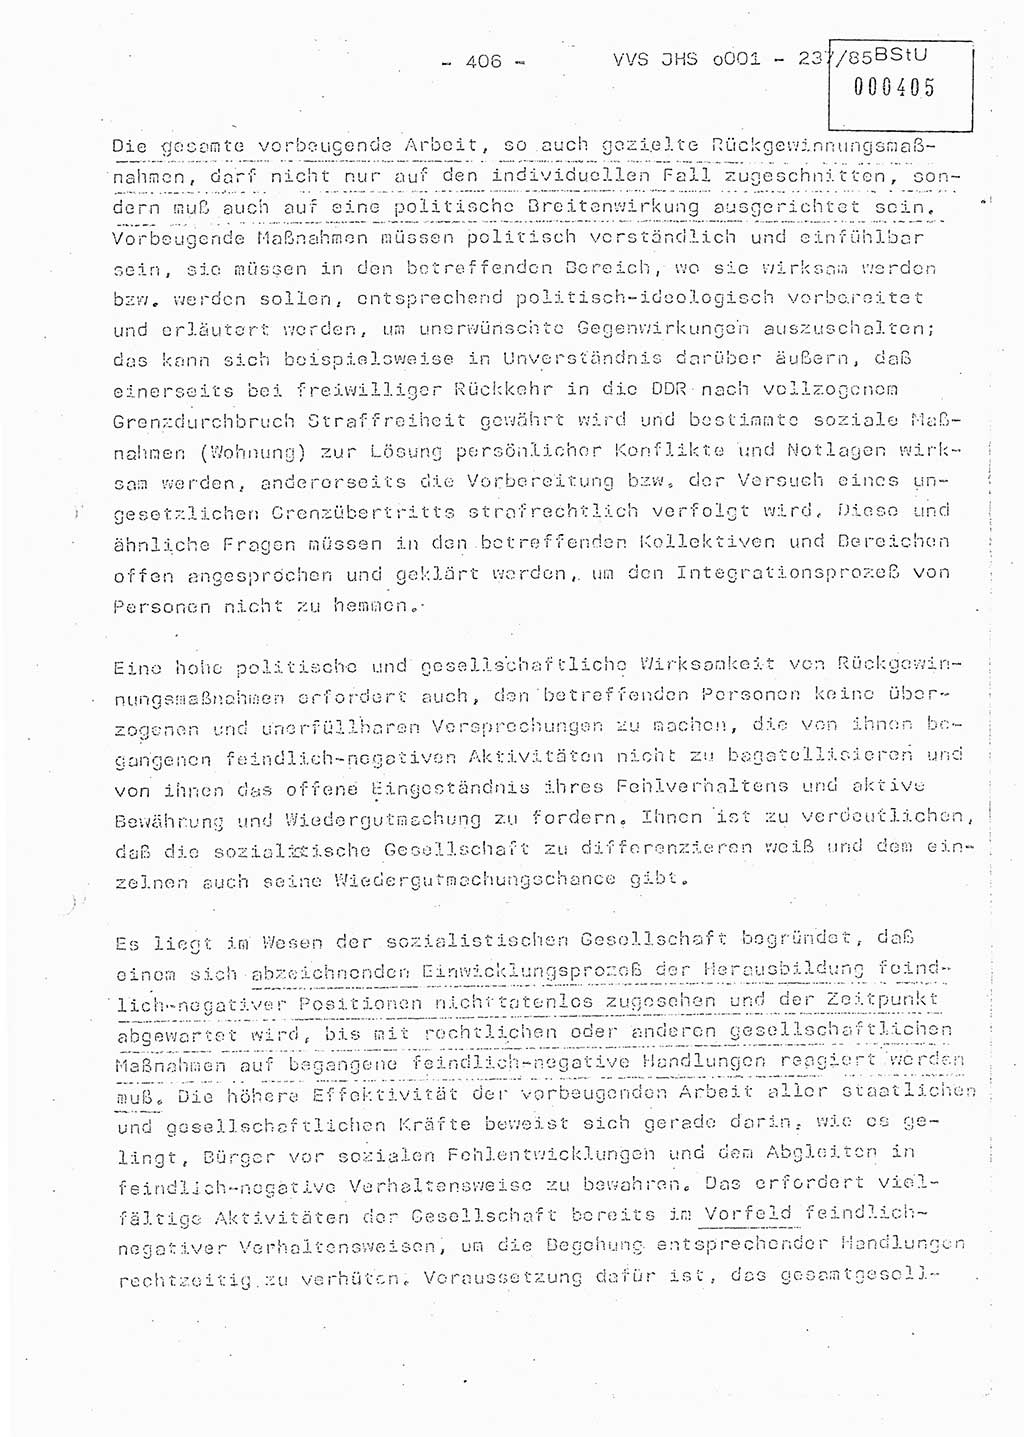 Dissertation Oberstleutnant Peter Jakulski (JHS), Oberstleutnat Christian Rudolph (HA Ⅸ), Major Horst Böttger (ZMD), Major Wolfgang Grüneberg (JHS), Major Albert Meutsch (JHS), Ministerium für Staatssicherheit (MfS) [Deutsche Demokratische Republik (DDR)], Juristische Hochschule (JHS), Vertrauliche Verschlußsache (VVS) o001-237/85, Potsdam 1985, Seite 406 (Diss. MfS DDR JHS VVS o001-237/85 1985, S. 406)